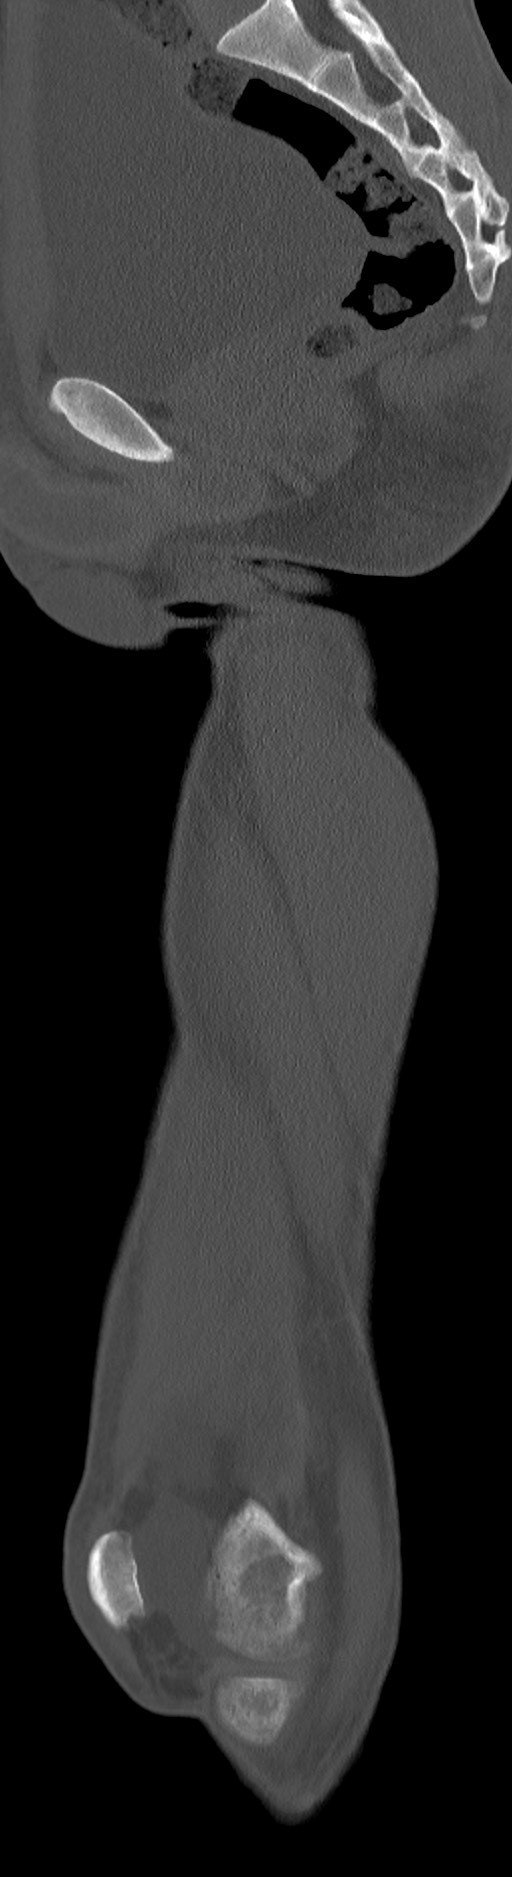 Chronic osteomyelitis (with sequestrum) (Radiopaedia 74813-85822 C 60).jpg